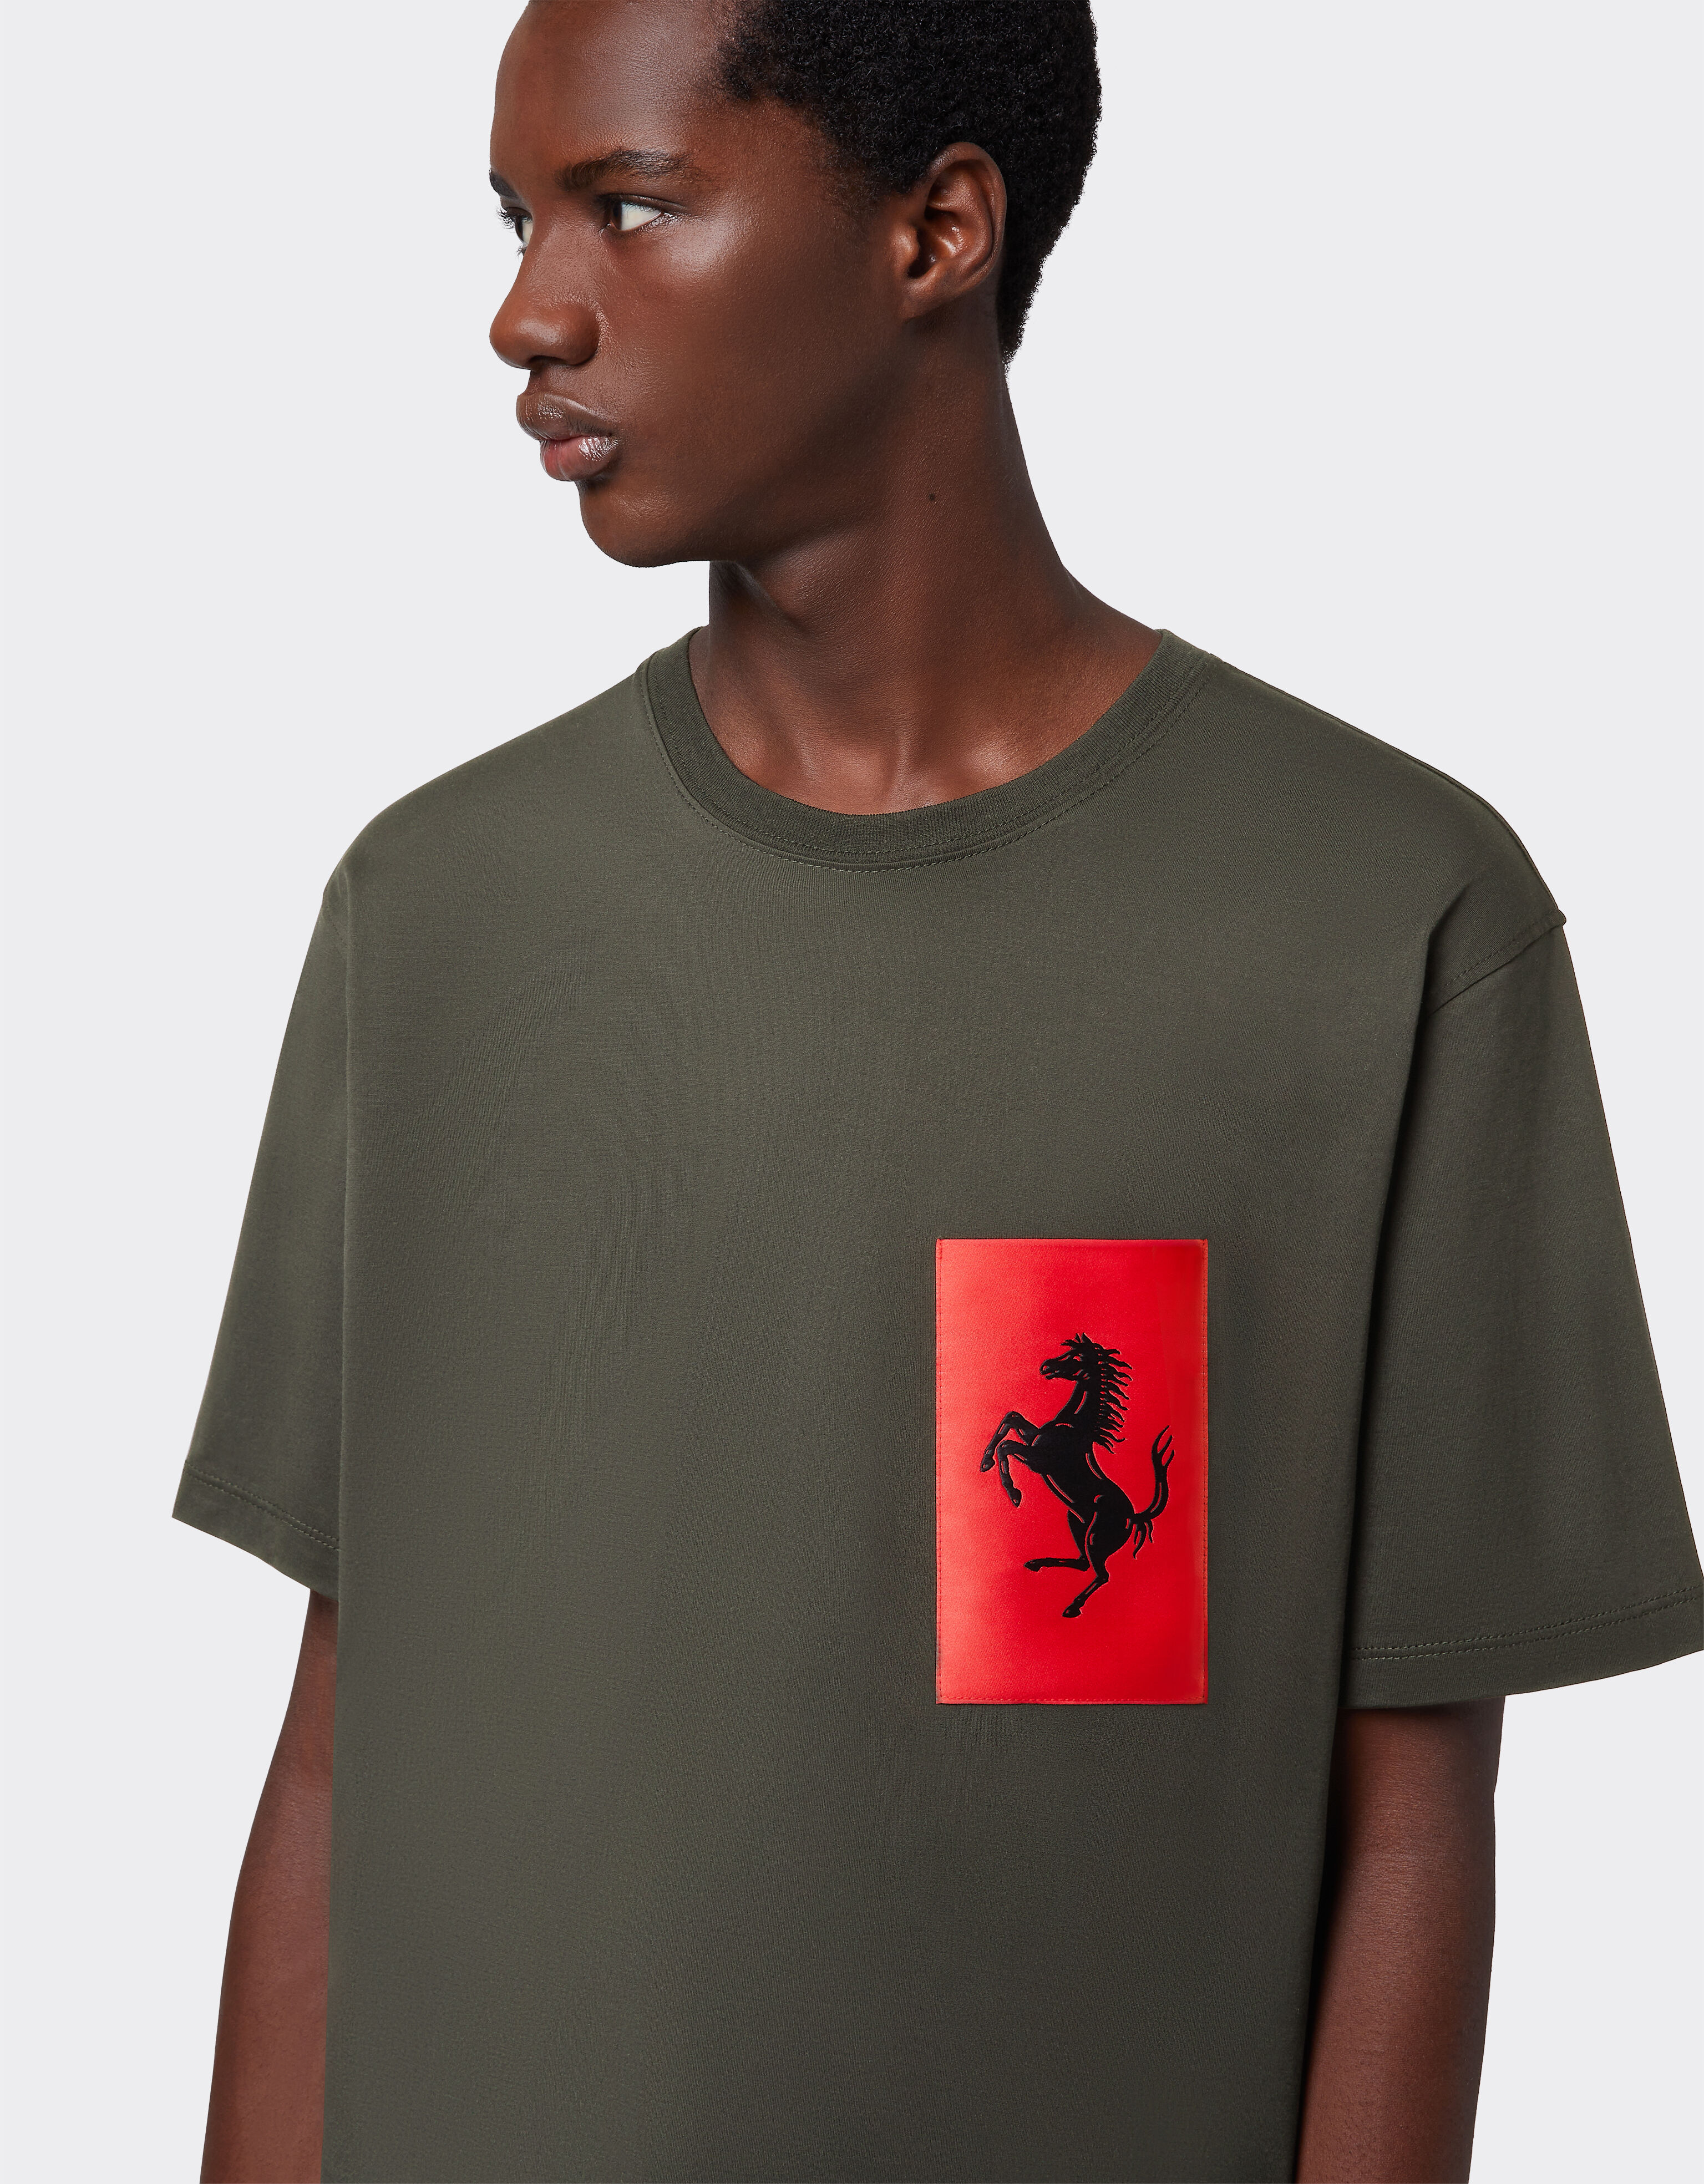 Ferrari T-shirt in cotone con tasca Cavallino Rampante Militare 47824f